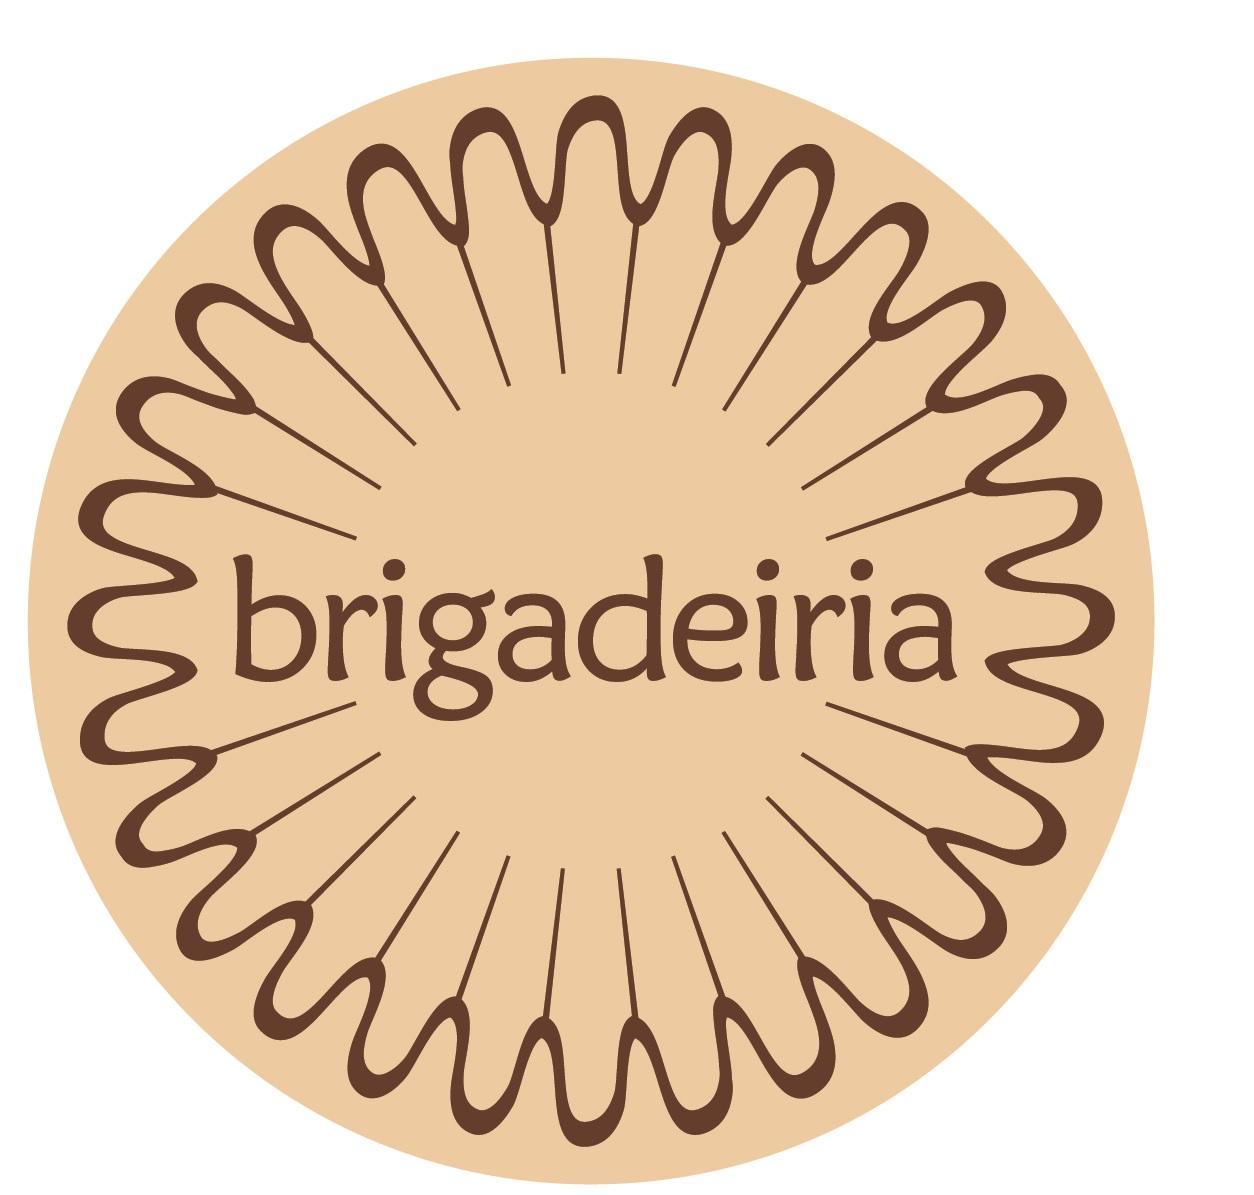 Brigadeiria logo